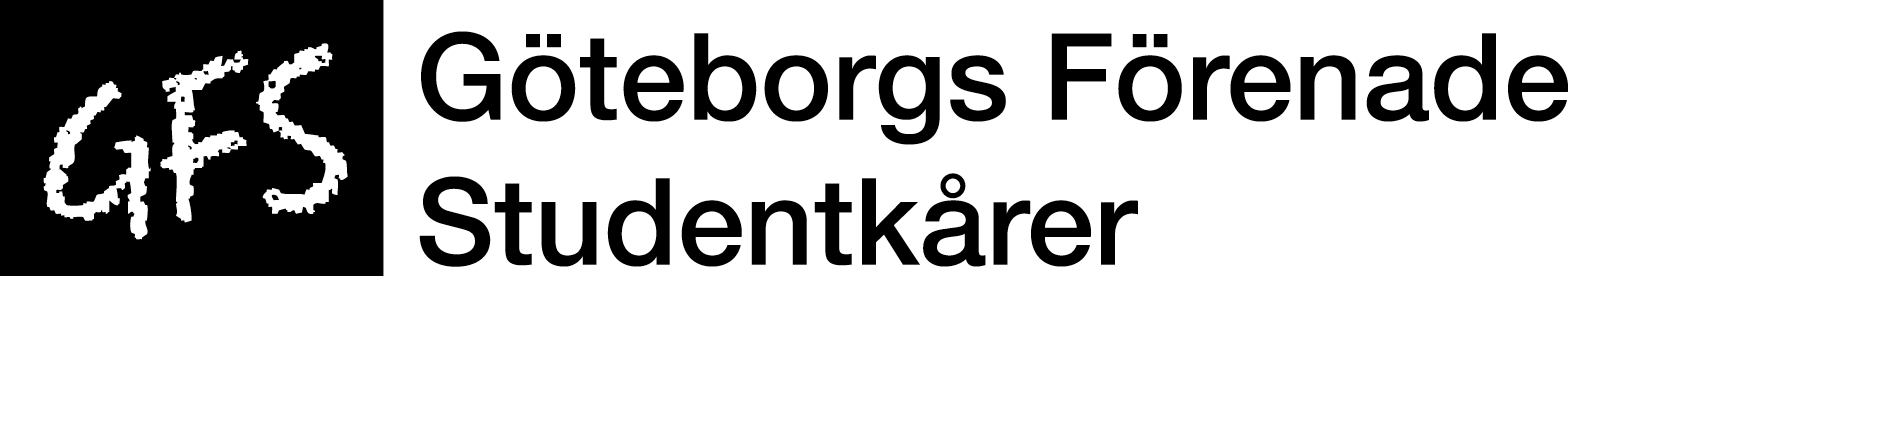 sanmodan: GFS söker styrelseledamot till Folkuniversitetet, Kursverksamheten vid Göteborgs universitet Göteborg Förenade Studentkårer (GFS) är en ideell samarbetsorganisation för studentkårerna i